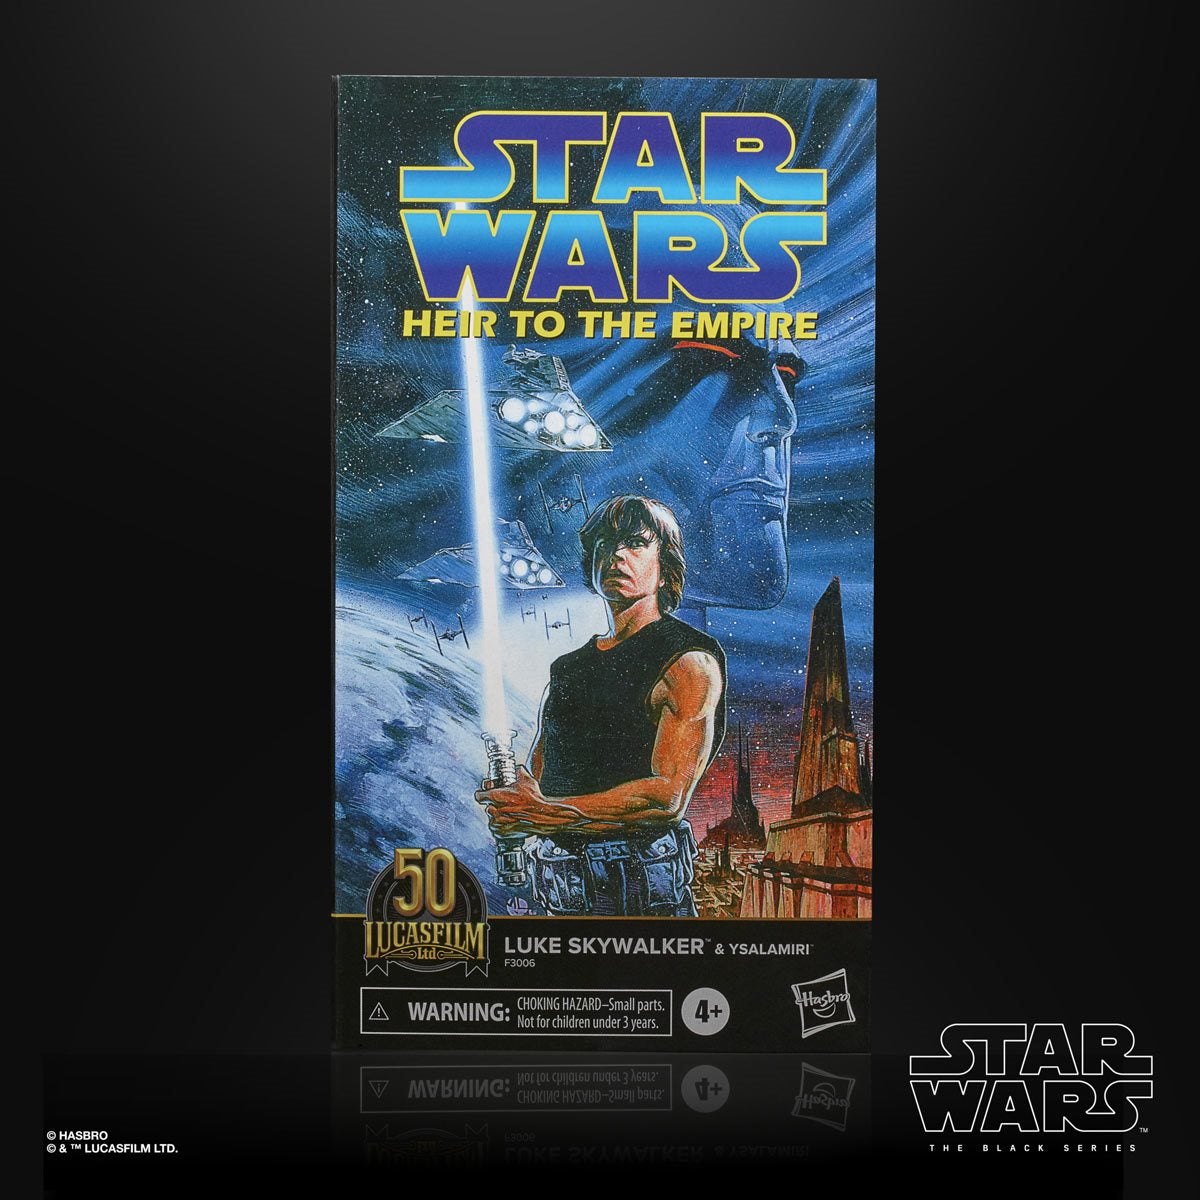 Star Wars: The Black Series - Luke Skywalker & Ysalamiri 